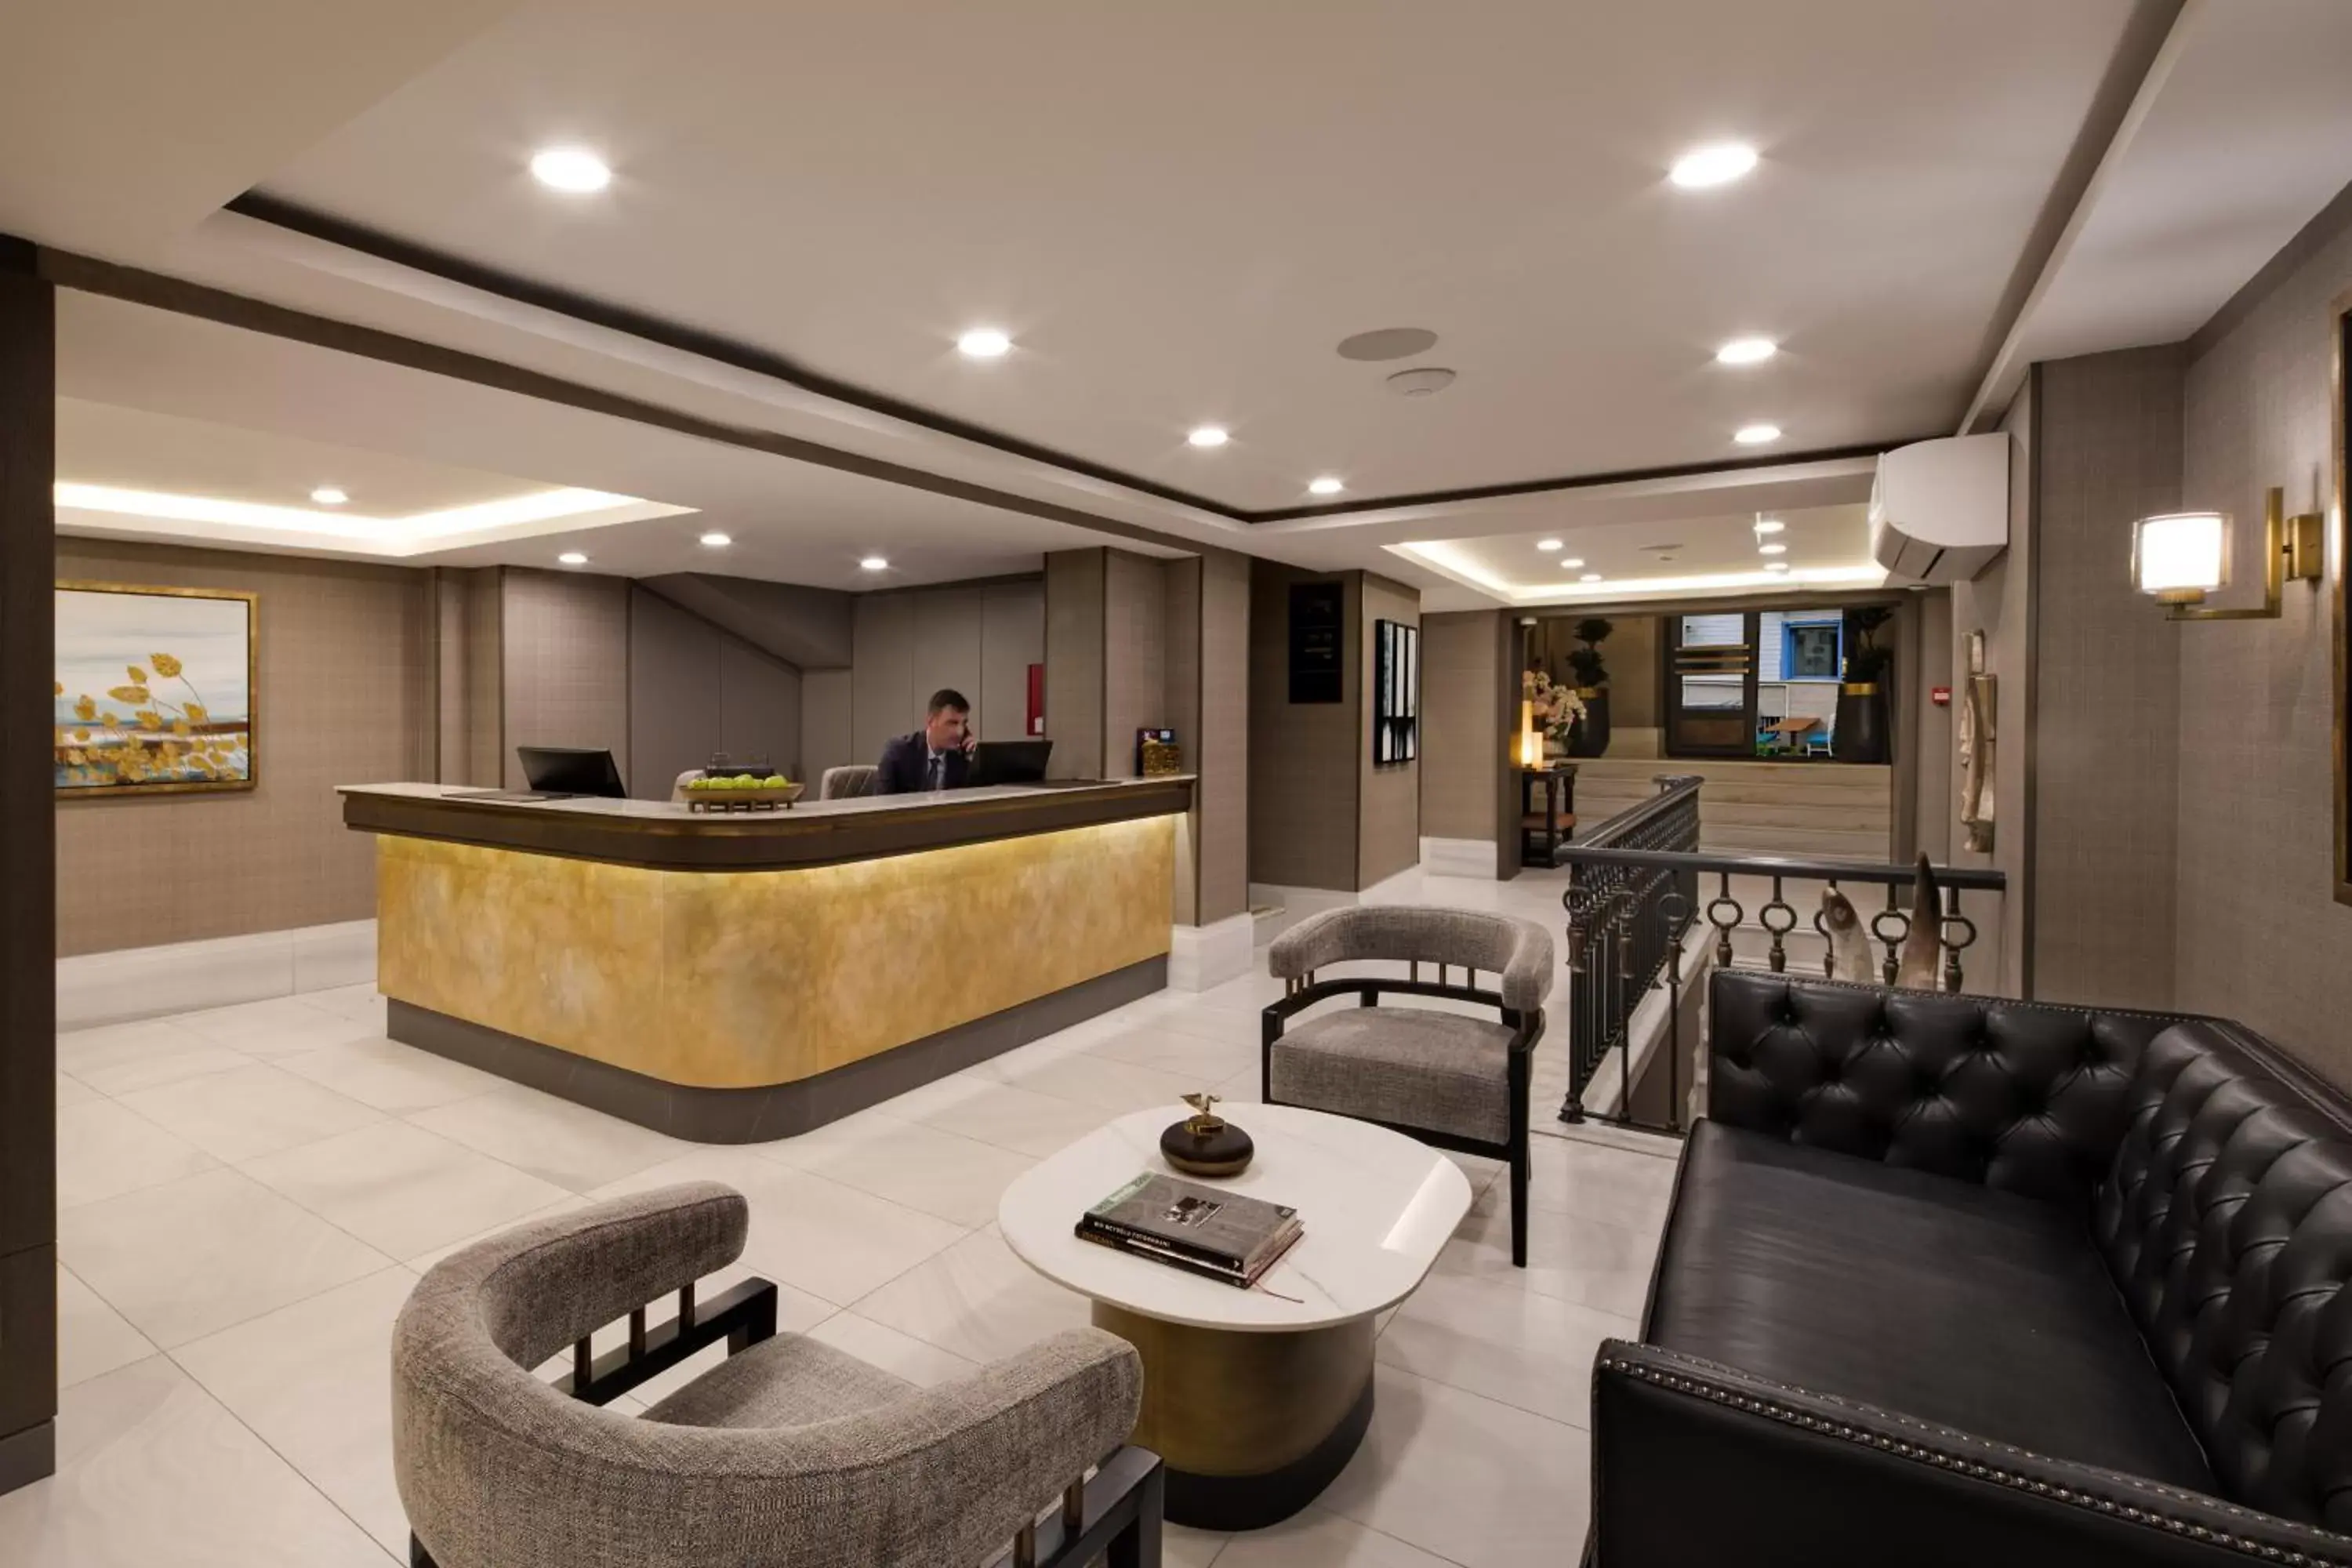 Lobby or reception, Lobby/Reception in Mula Hotel